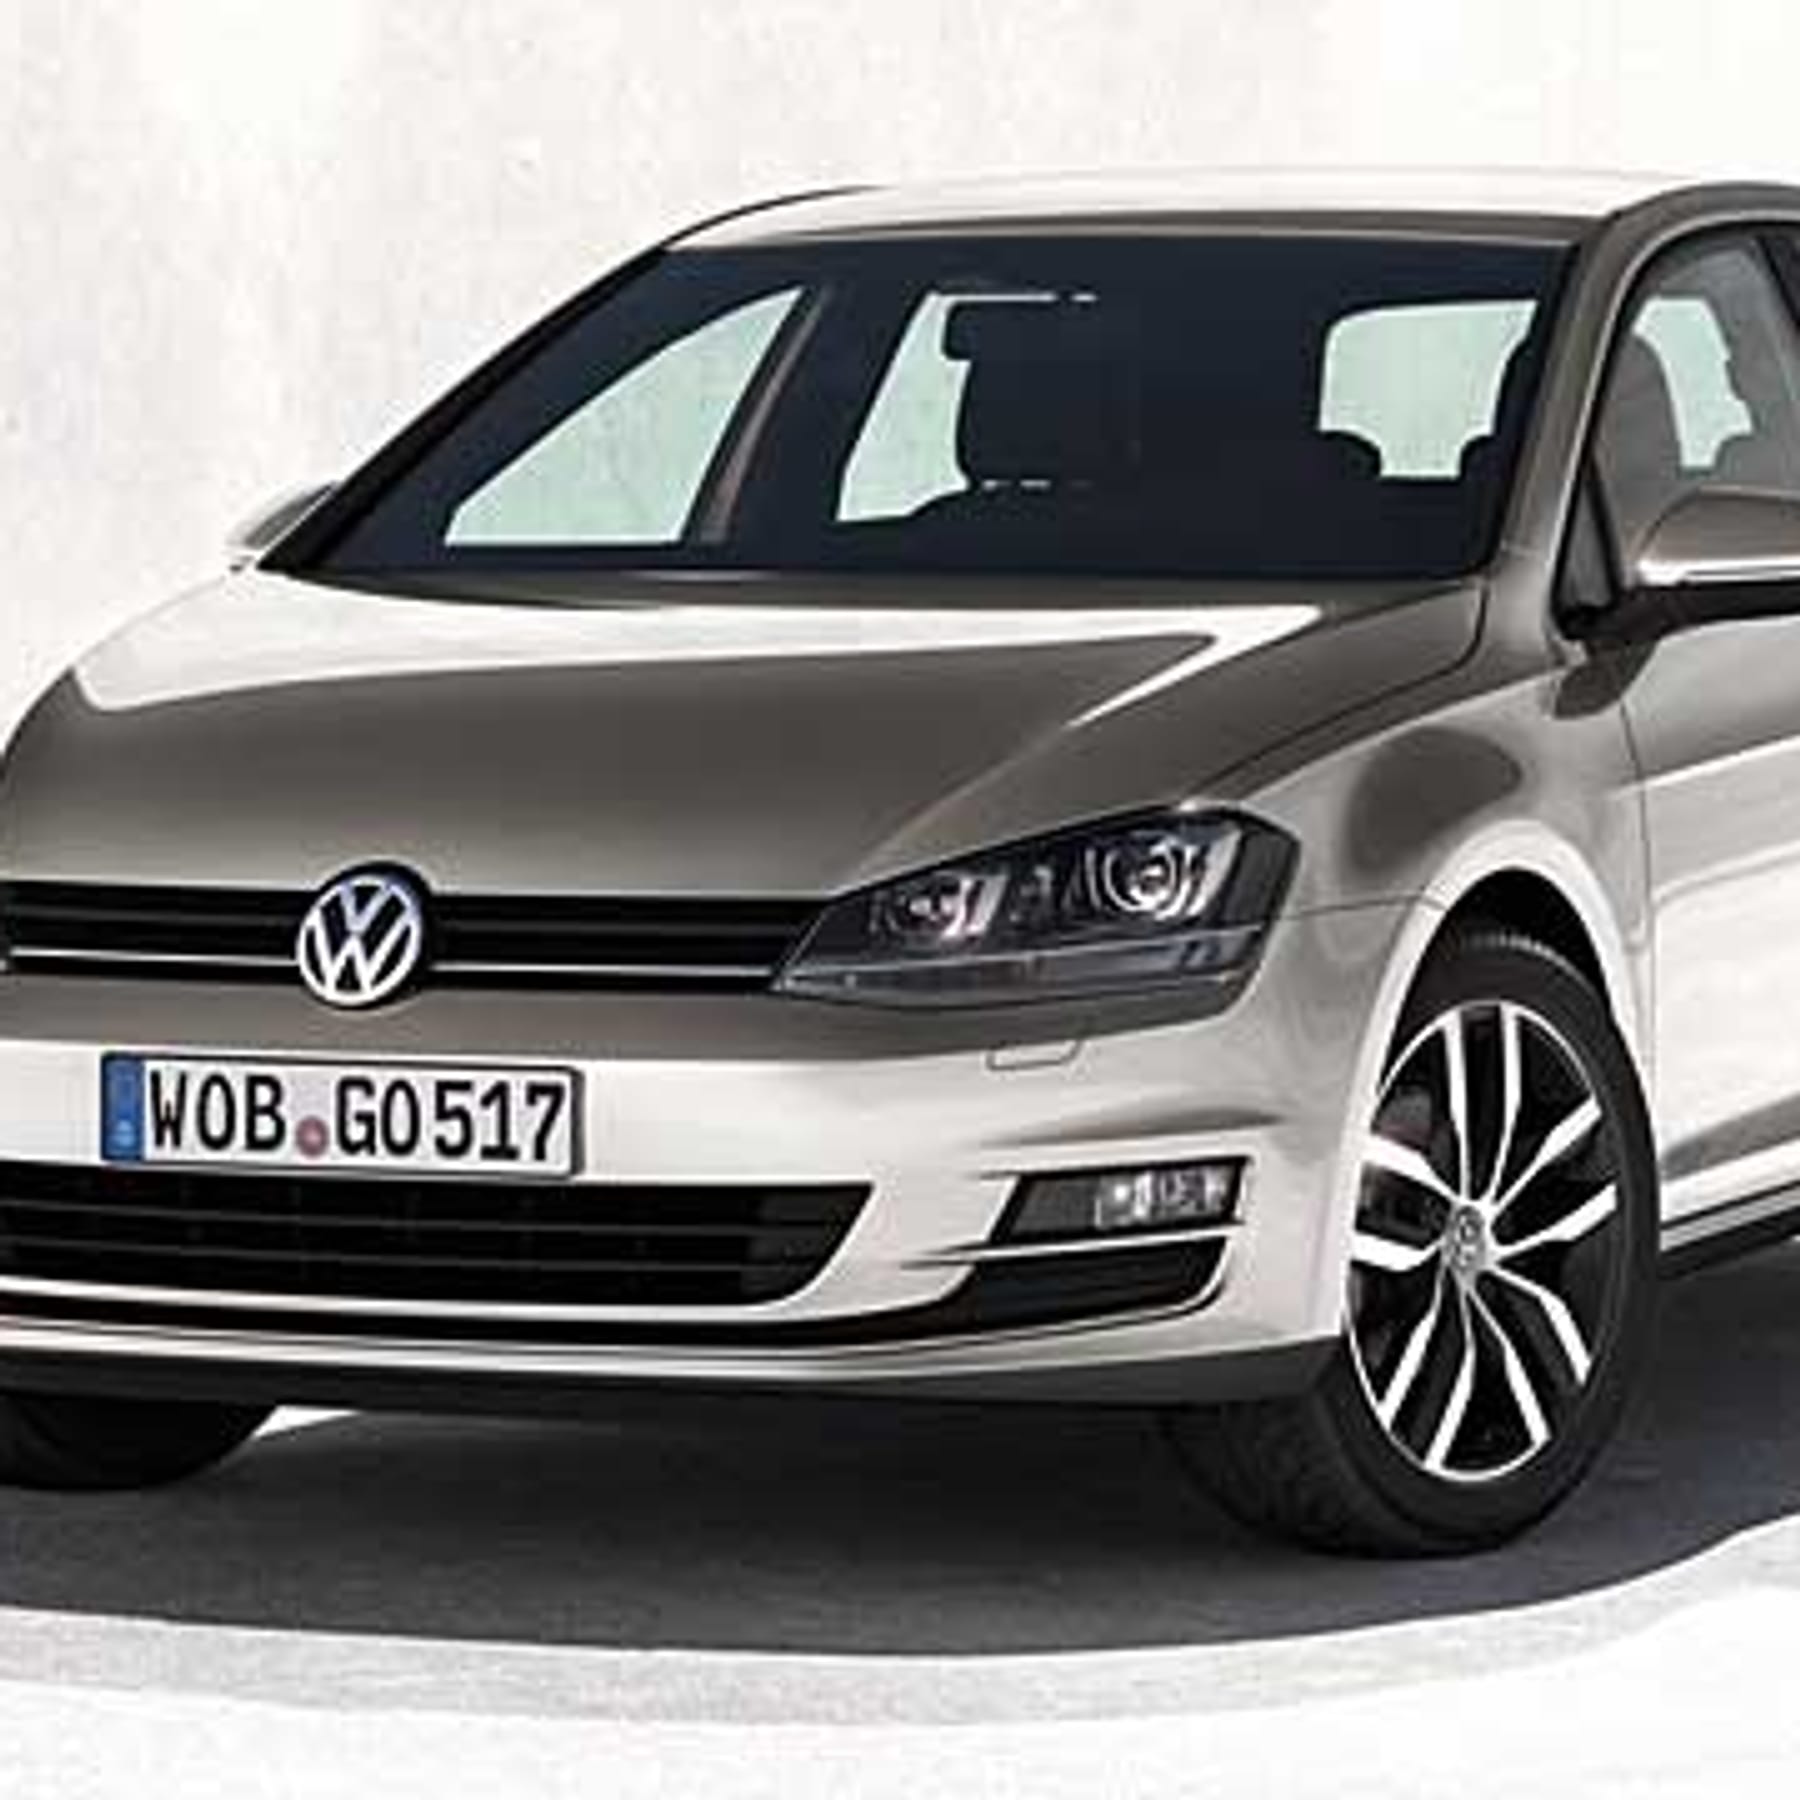 VW Golf VII Preis: Das kostet der neue Golf 7 - AUTO BILD